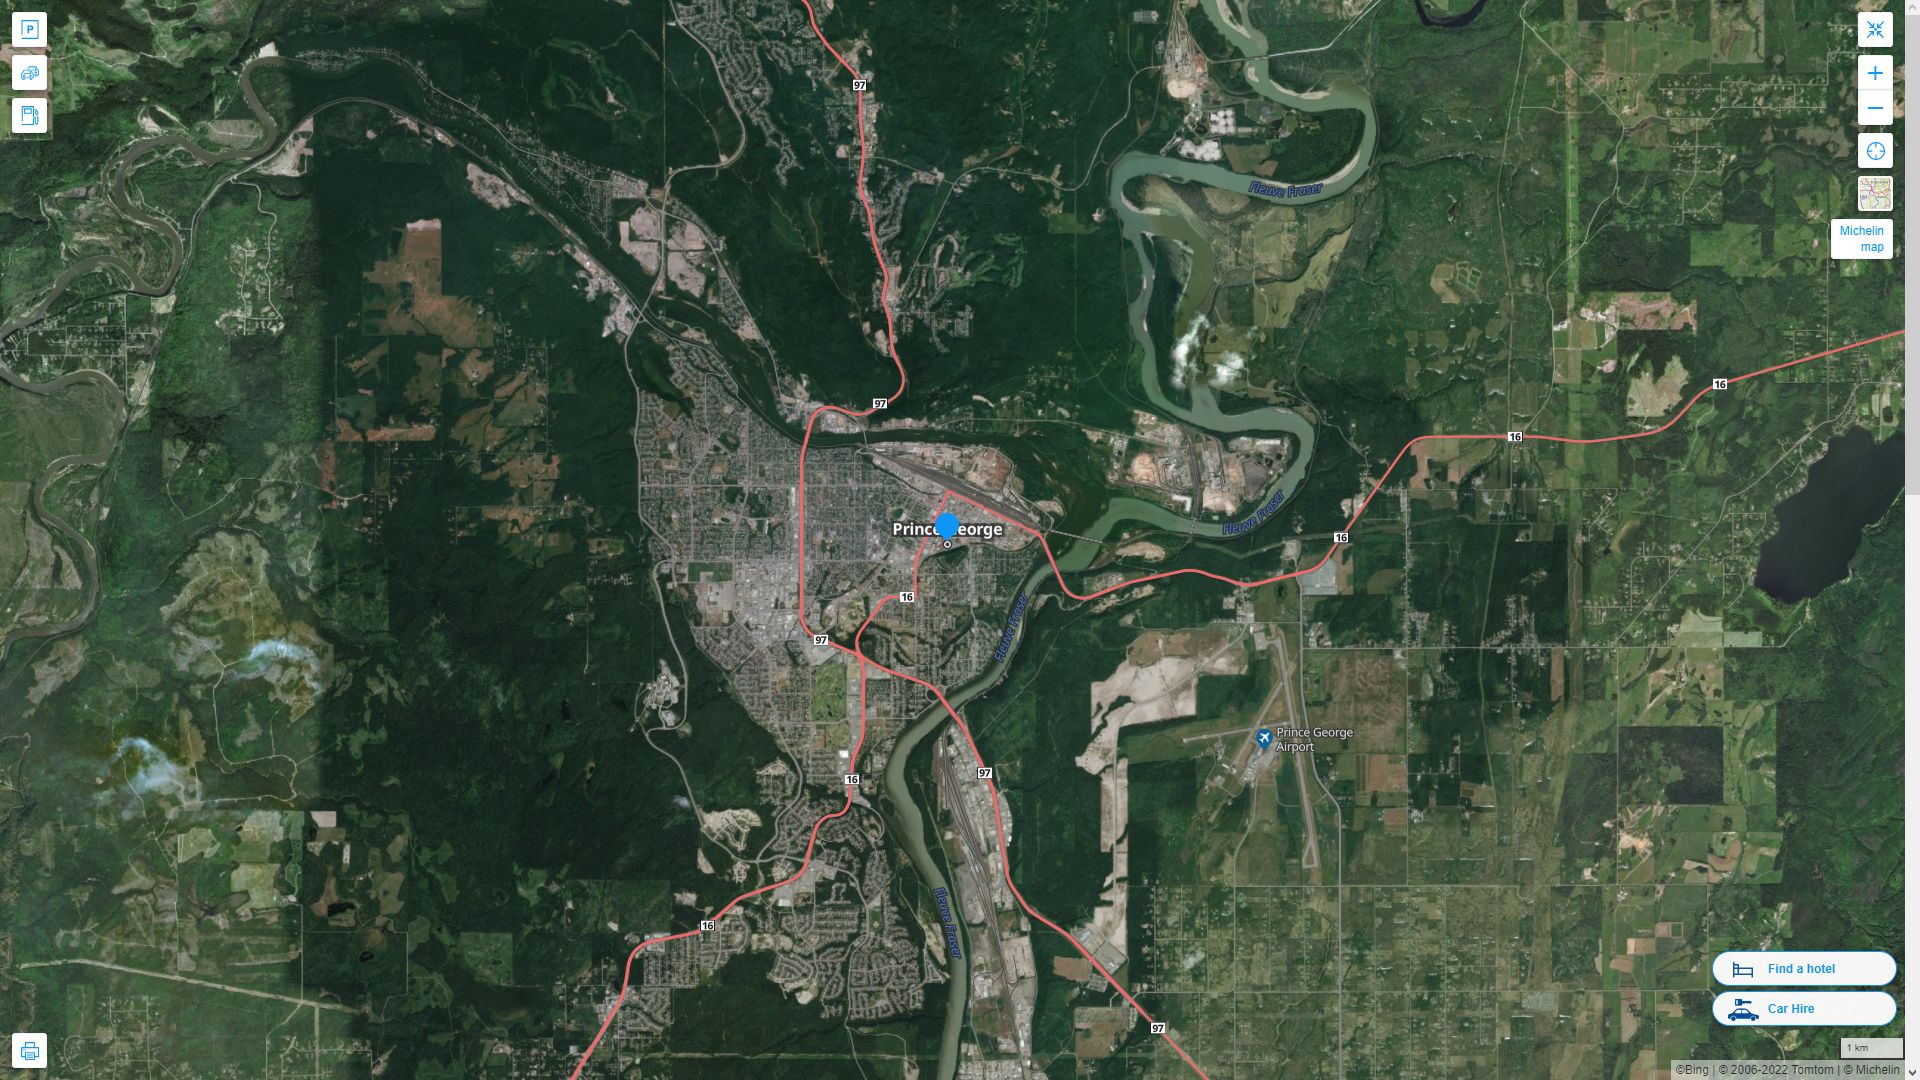 Prince George Canada Autoroute et carte routiere avec vue satellite